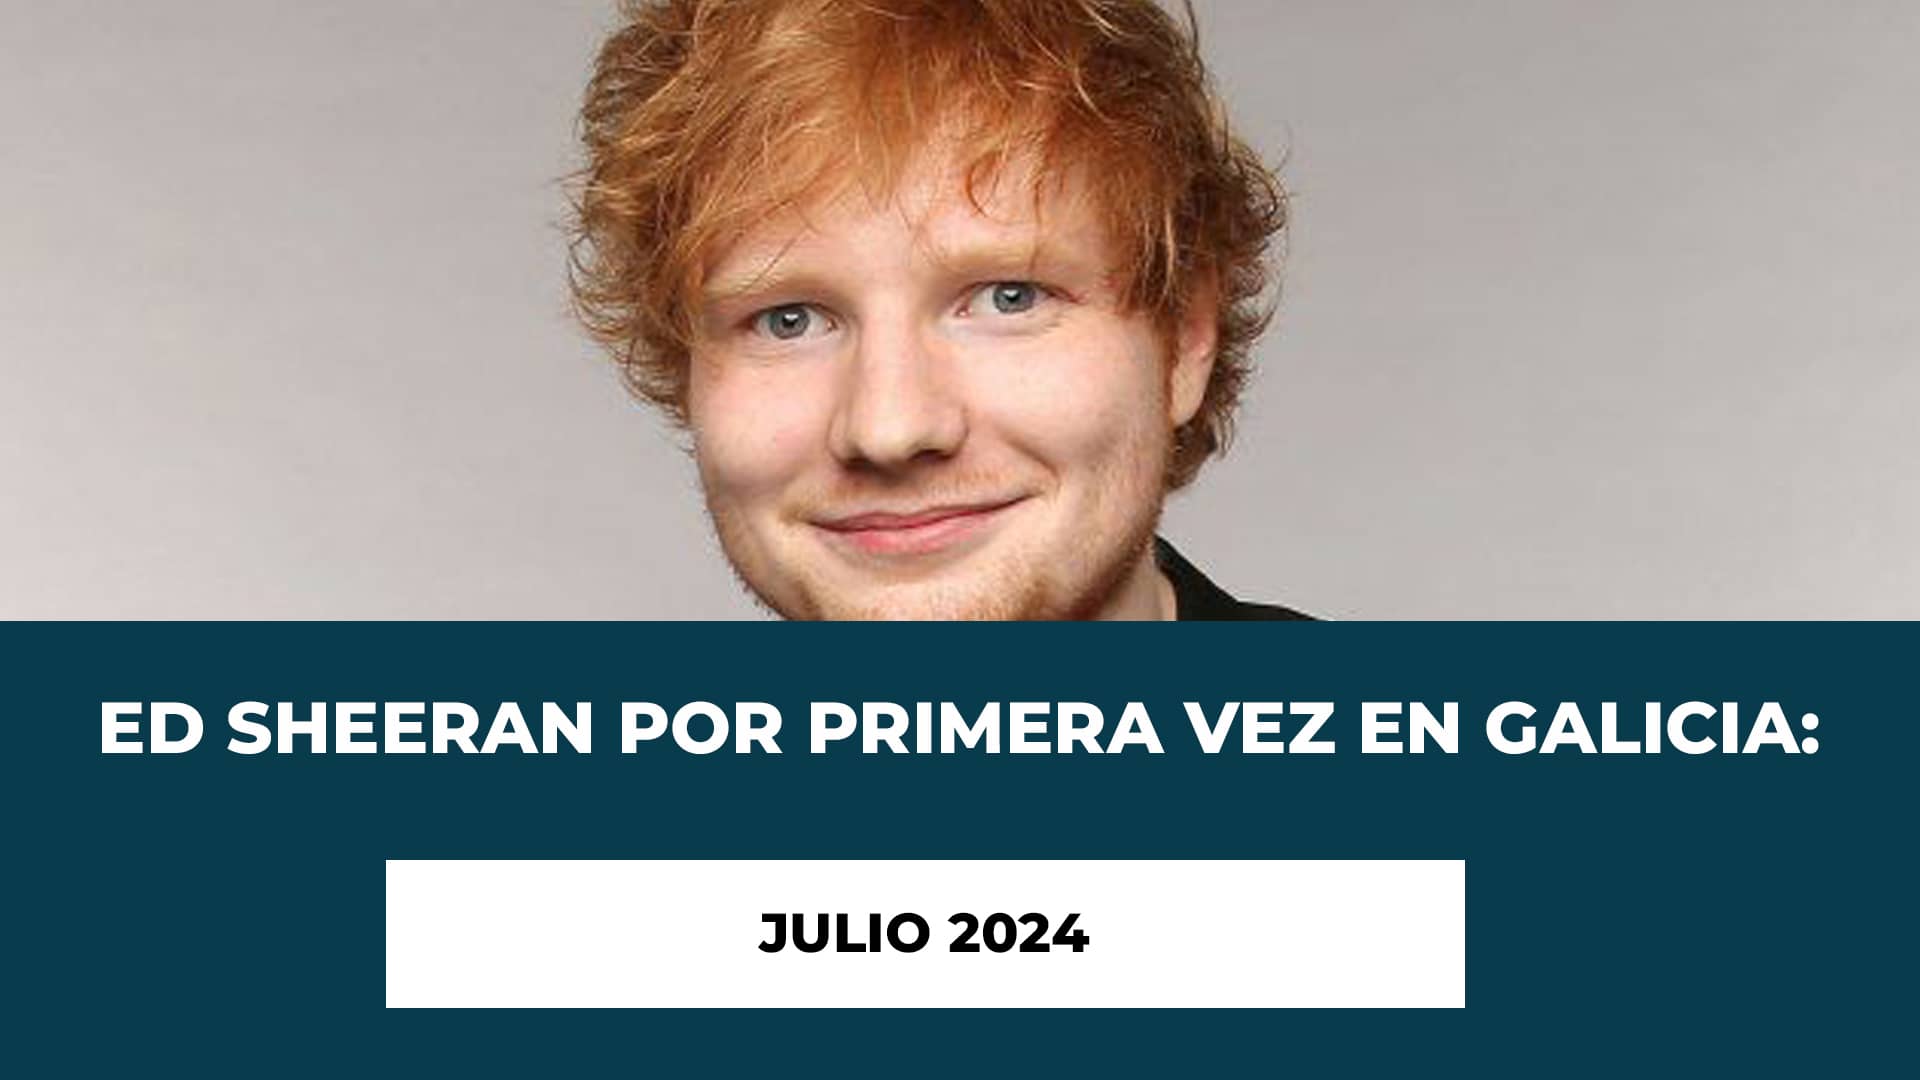 Ed Sheeran por primera vez en Galicia: Julio 2024 - Fecha - Lugar - Horario - Entradas a la venta - Ed Sheeran Santiago Compostela